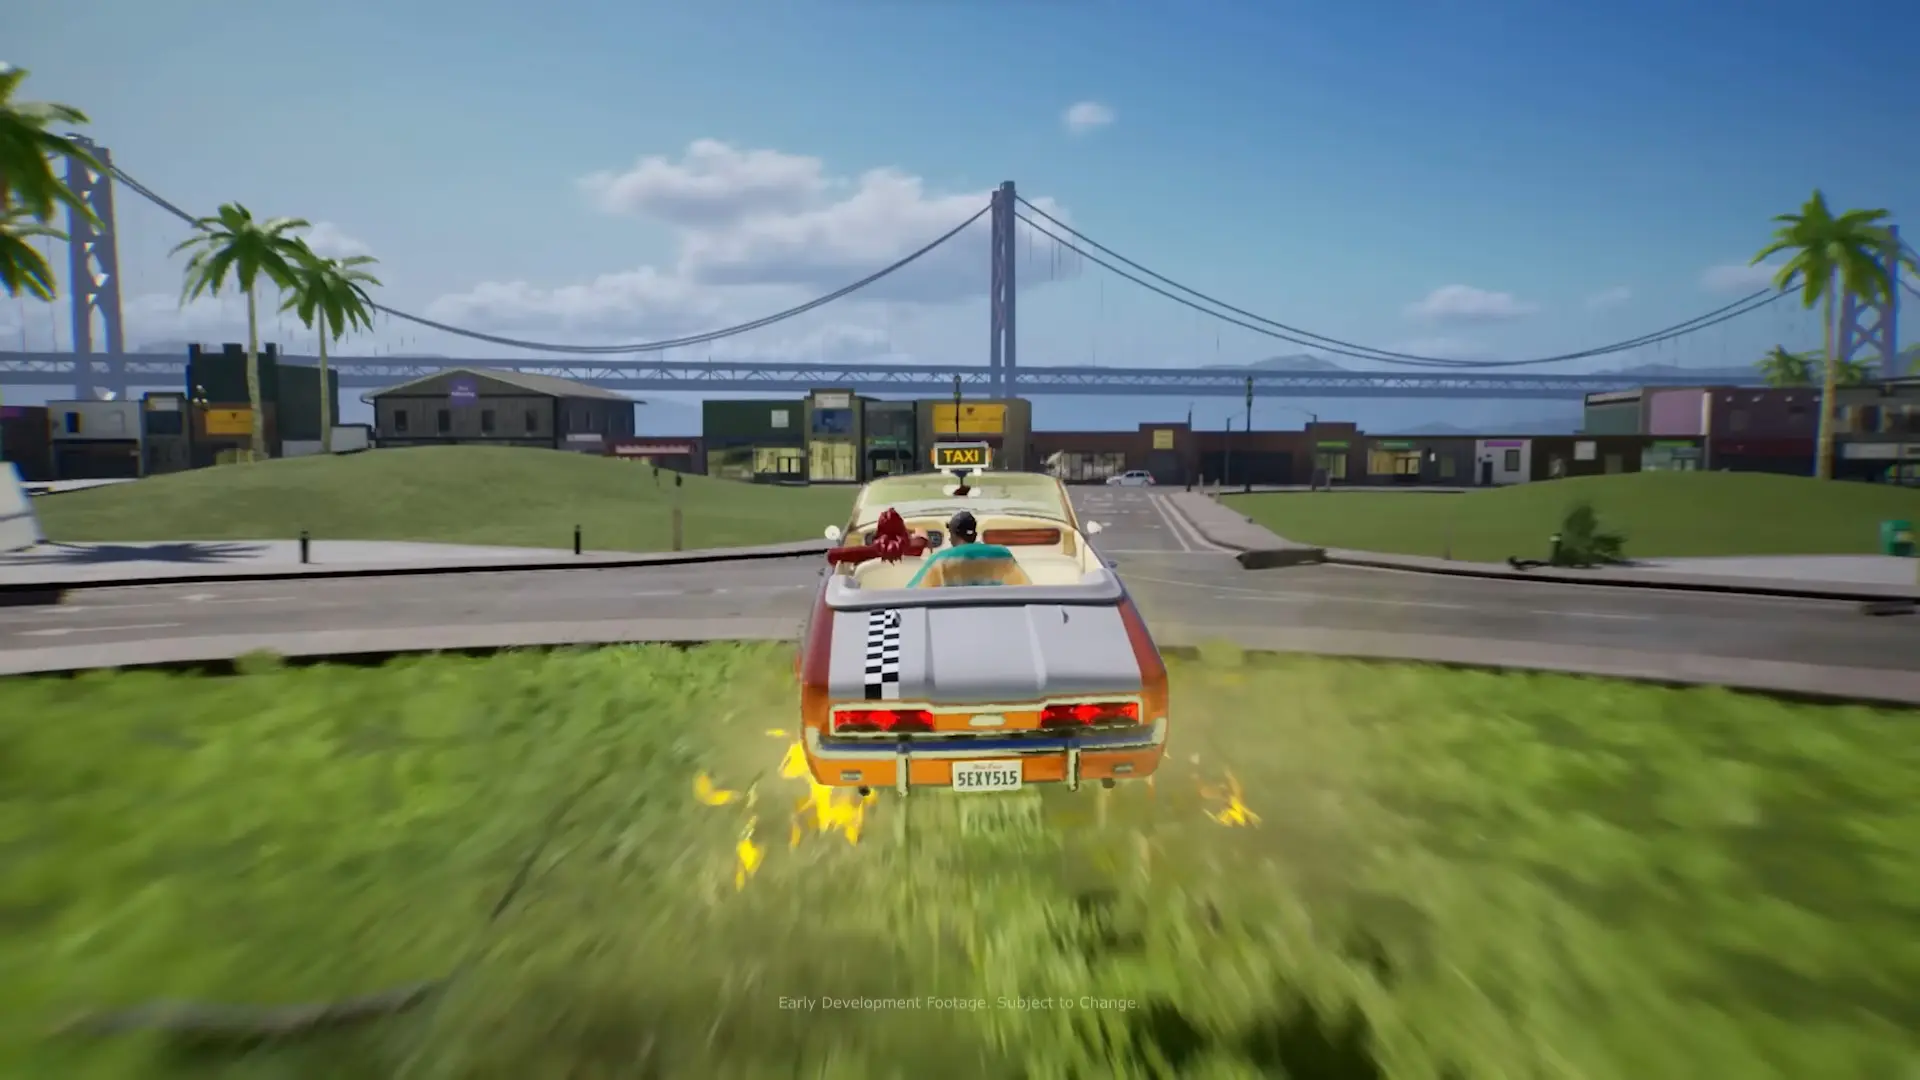 بازی جدید Crazy Taxi به صورت جهان باز و چند نفره خواهد بود